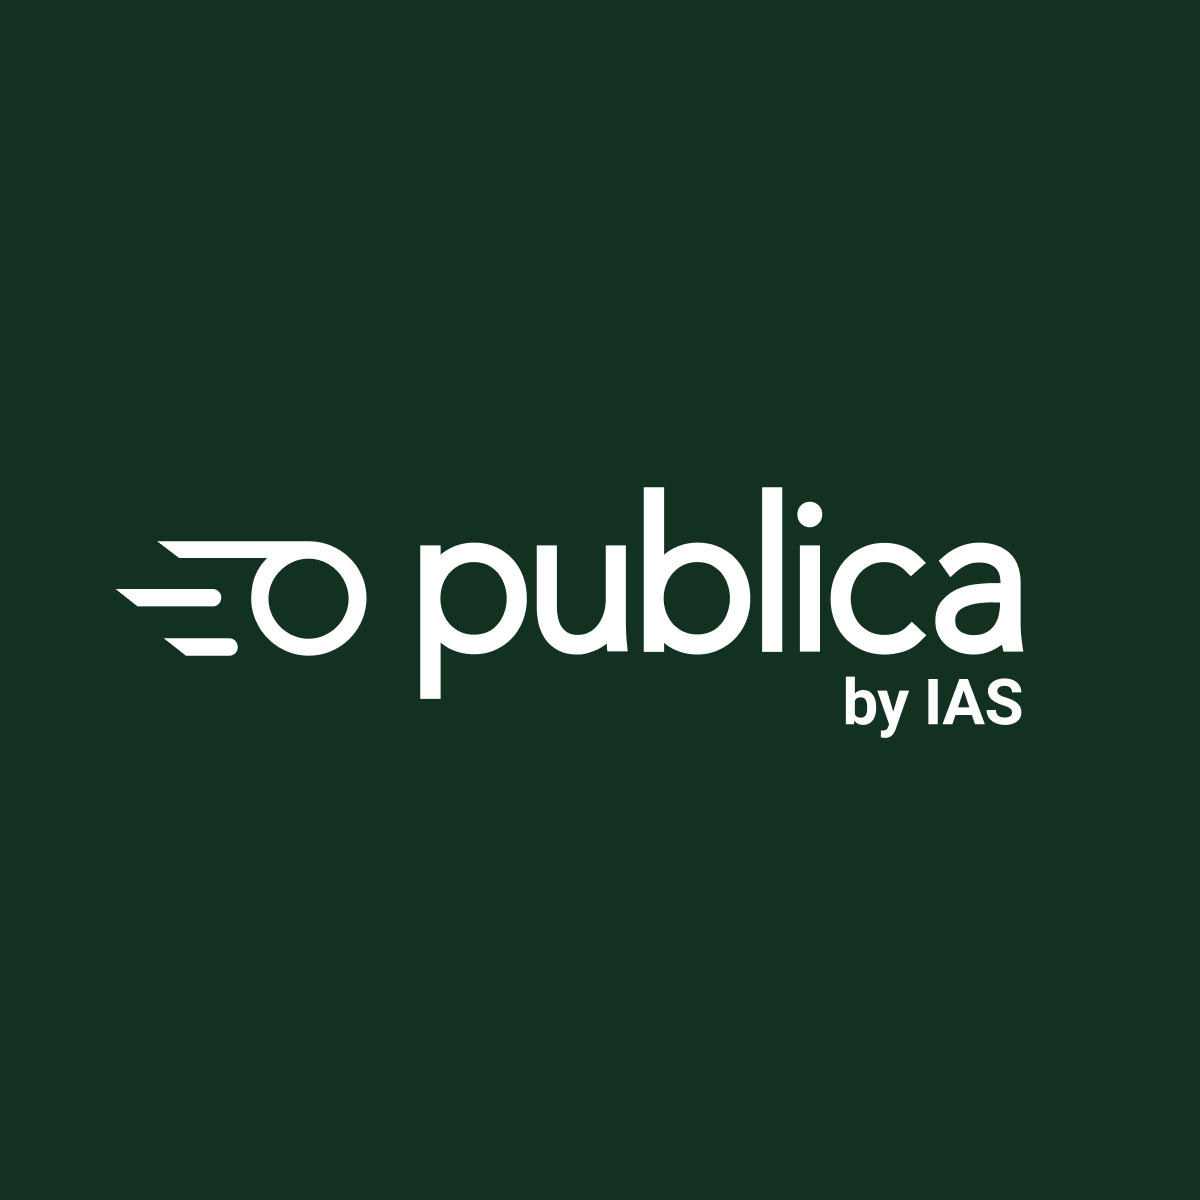 Publica by IAS logo.